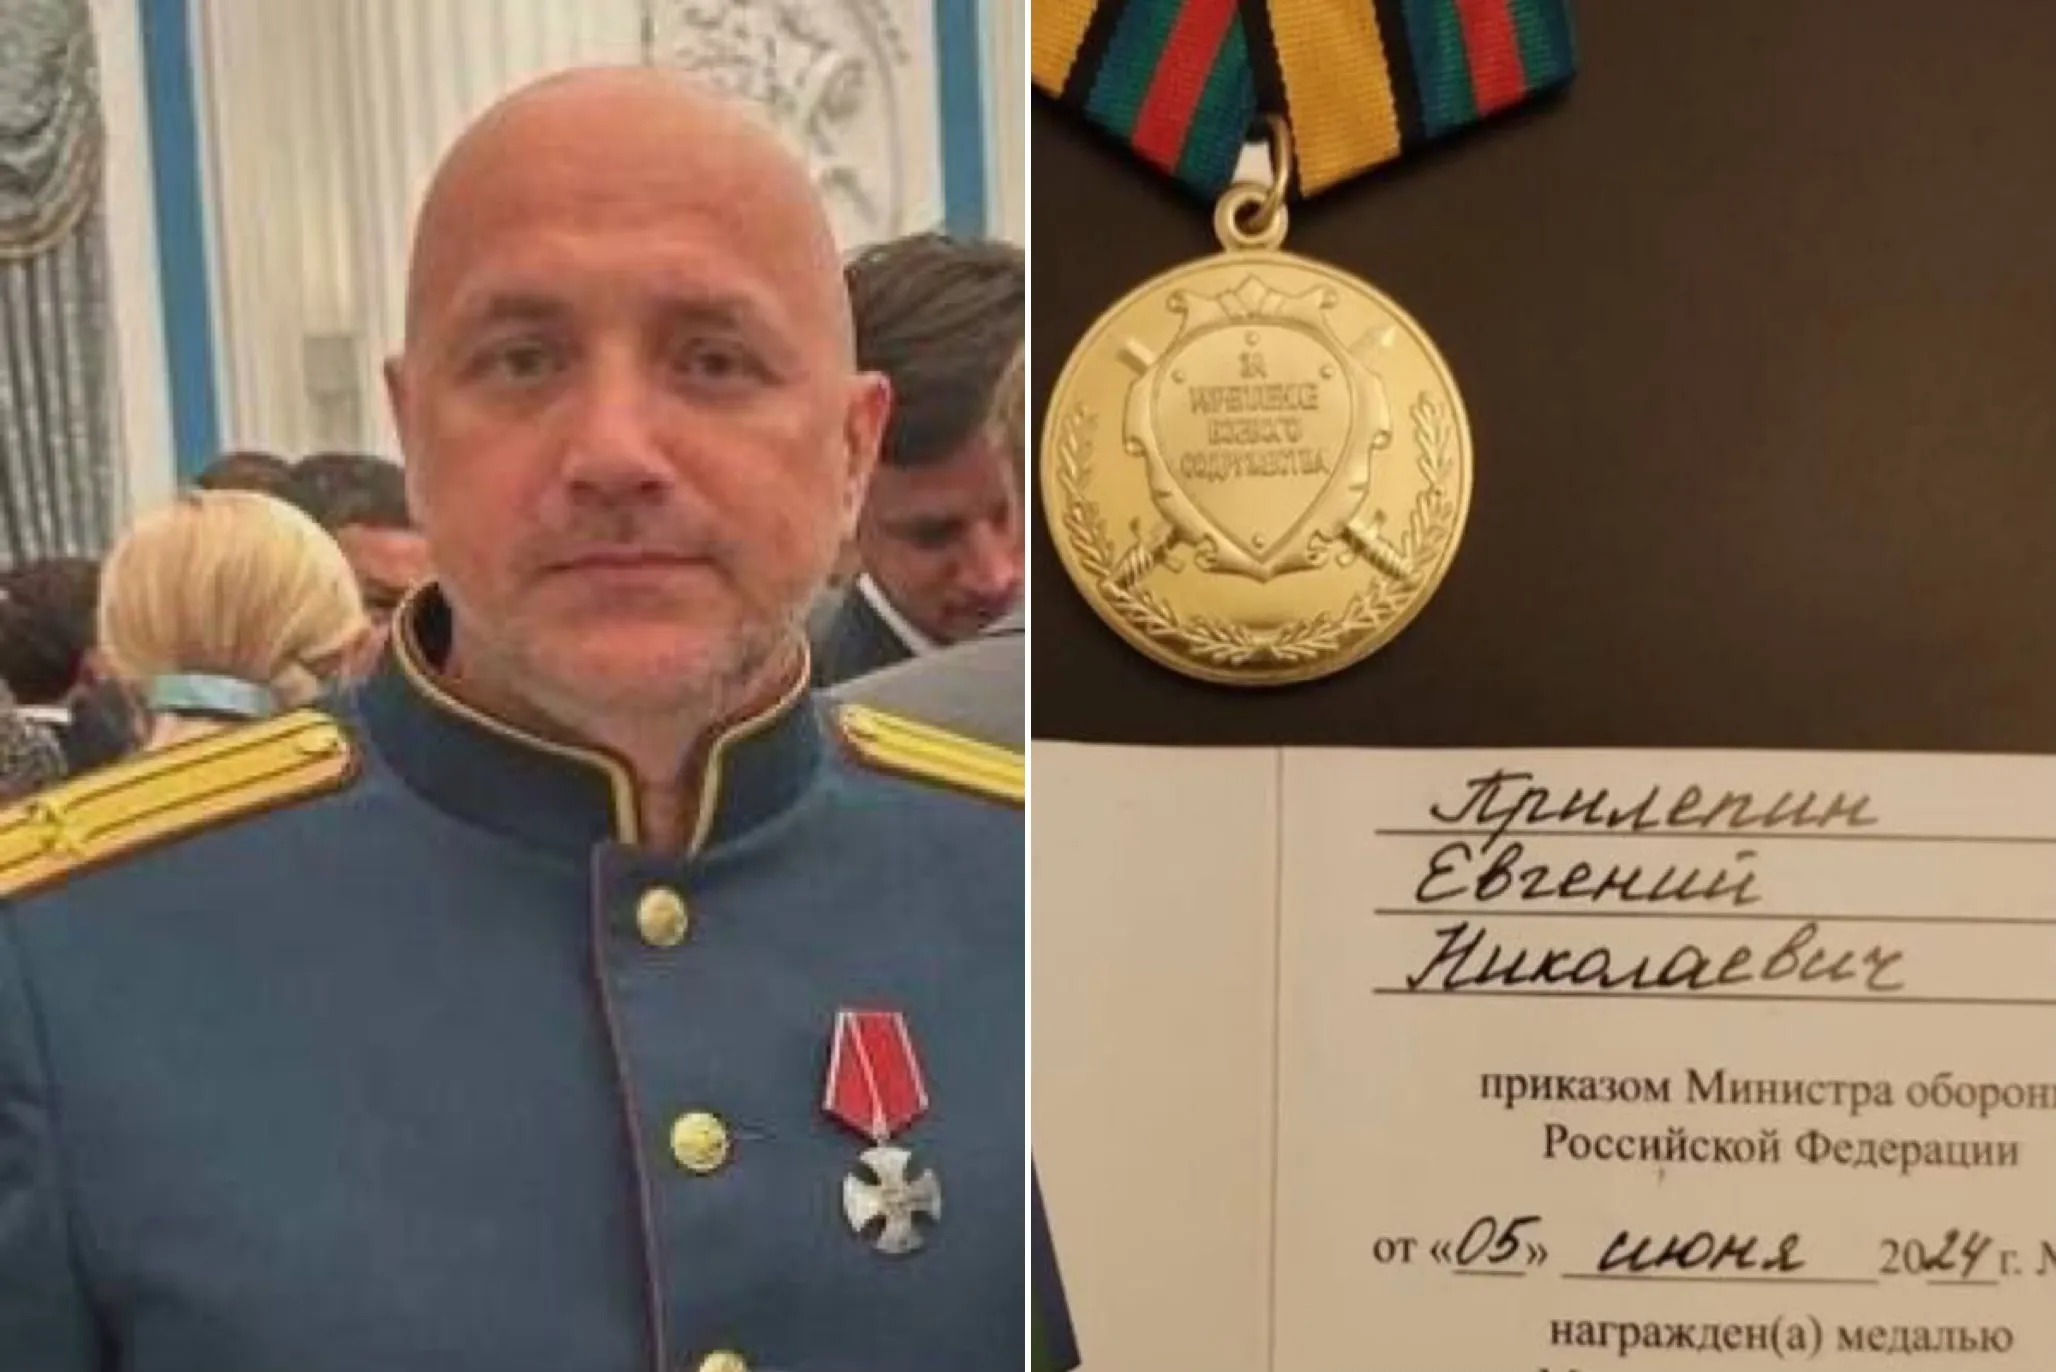 Выжившему при взрыве Захару Прилепину вручили орден Мужества в Кремле